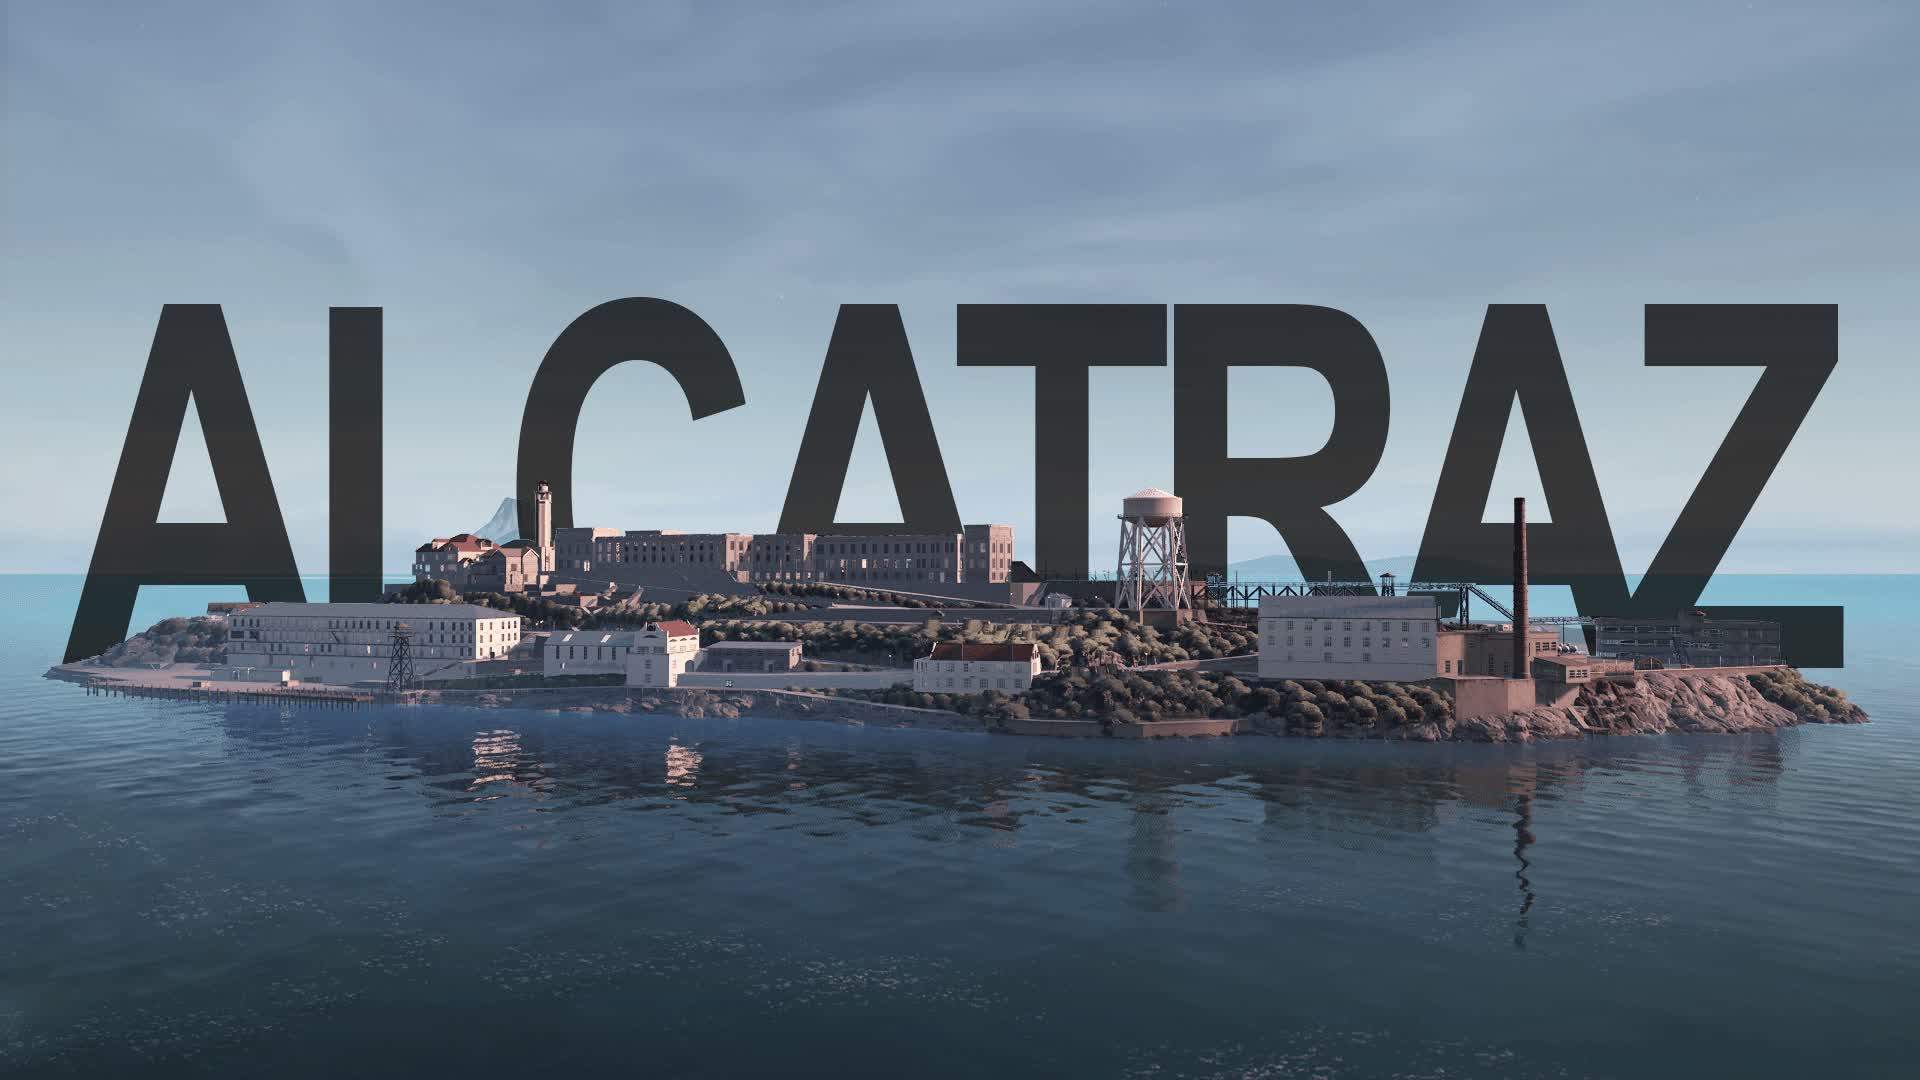 Alcatraz / Battle Royal 30p